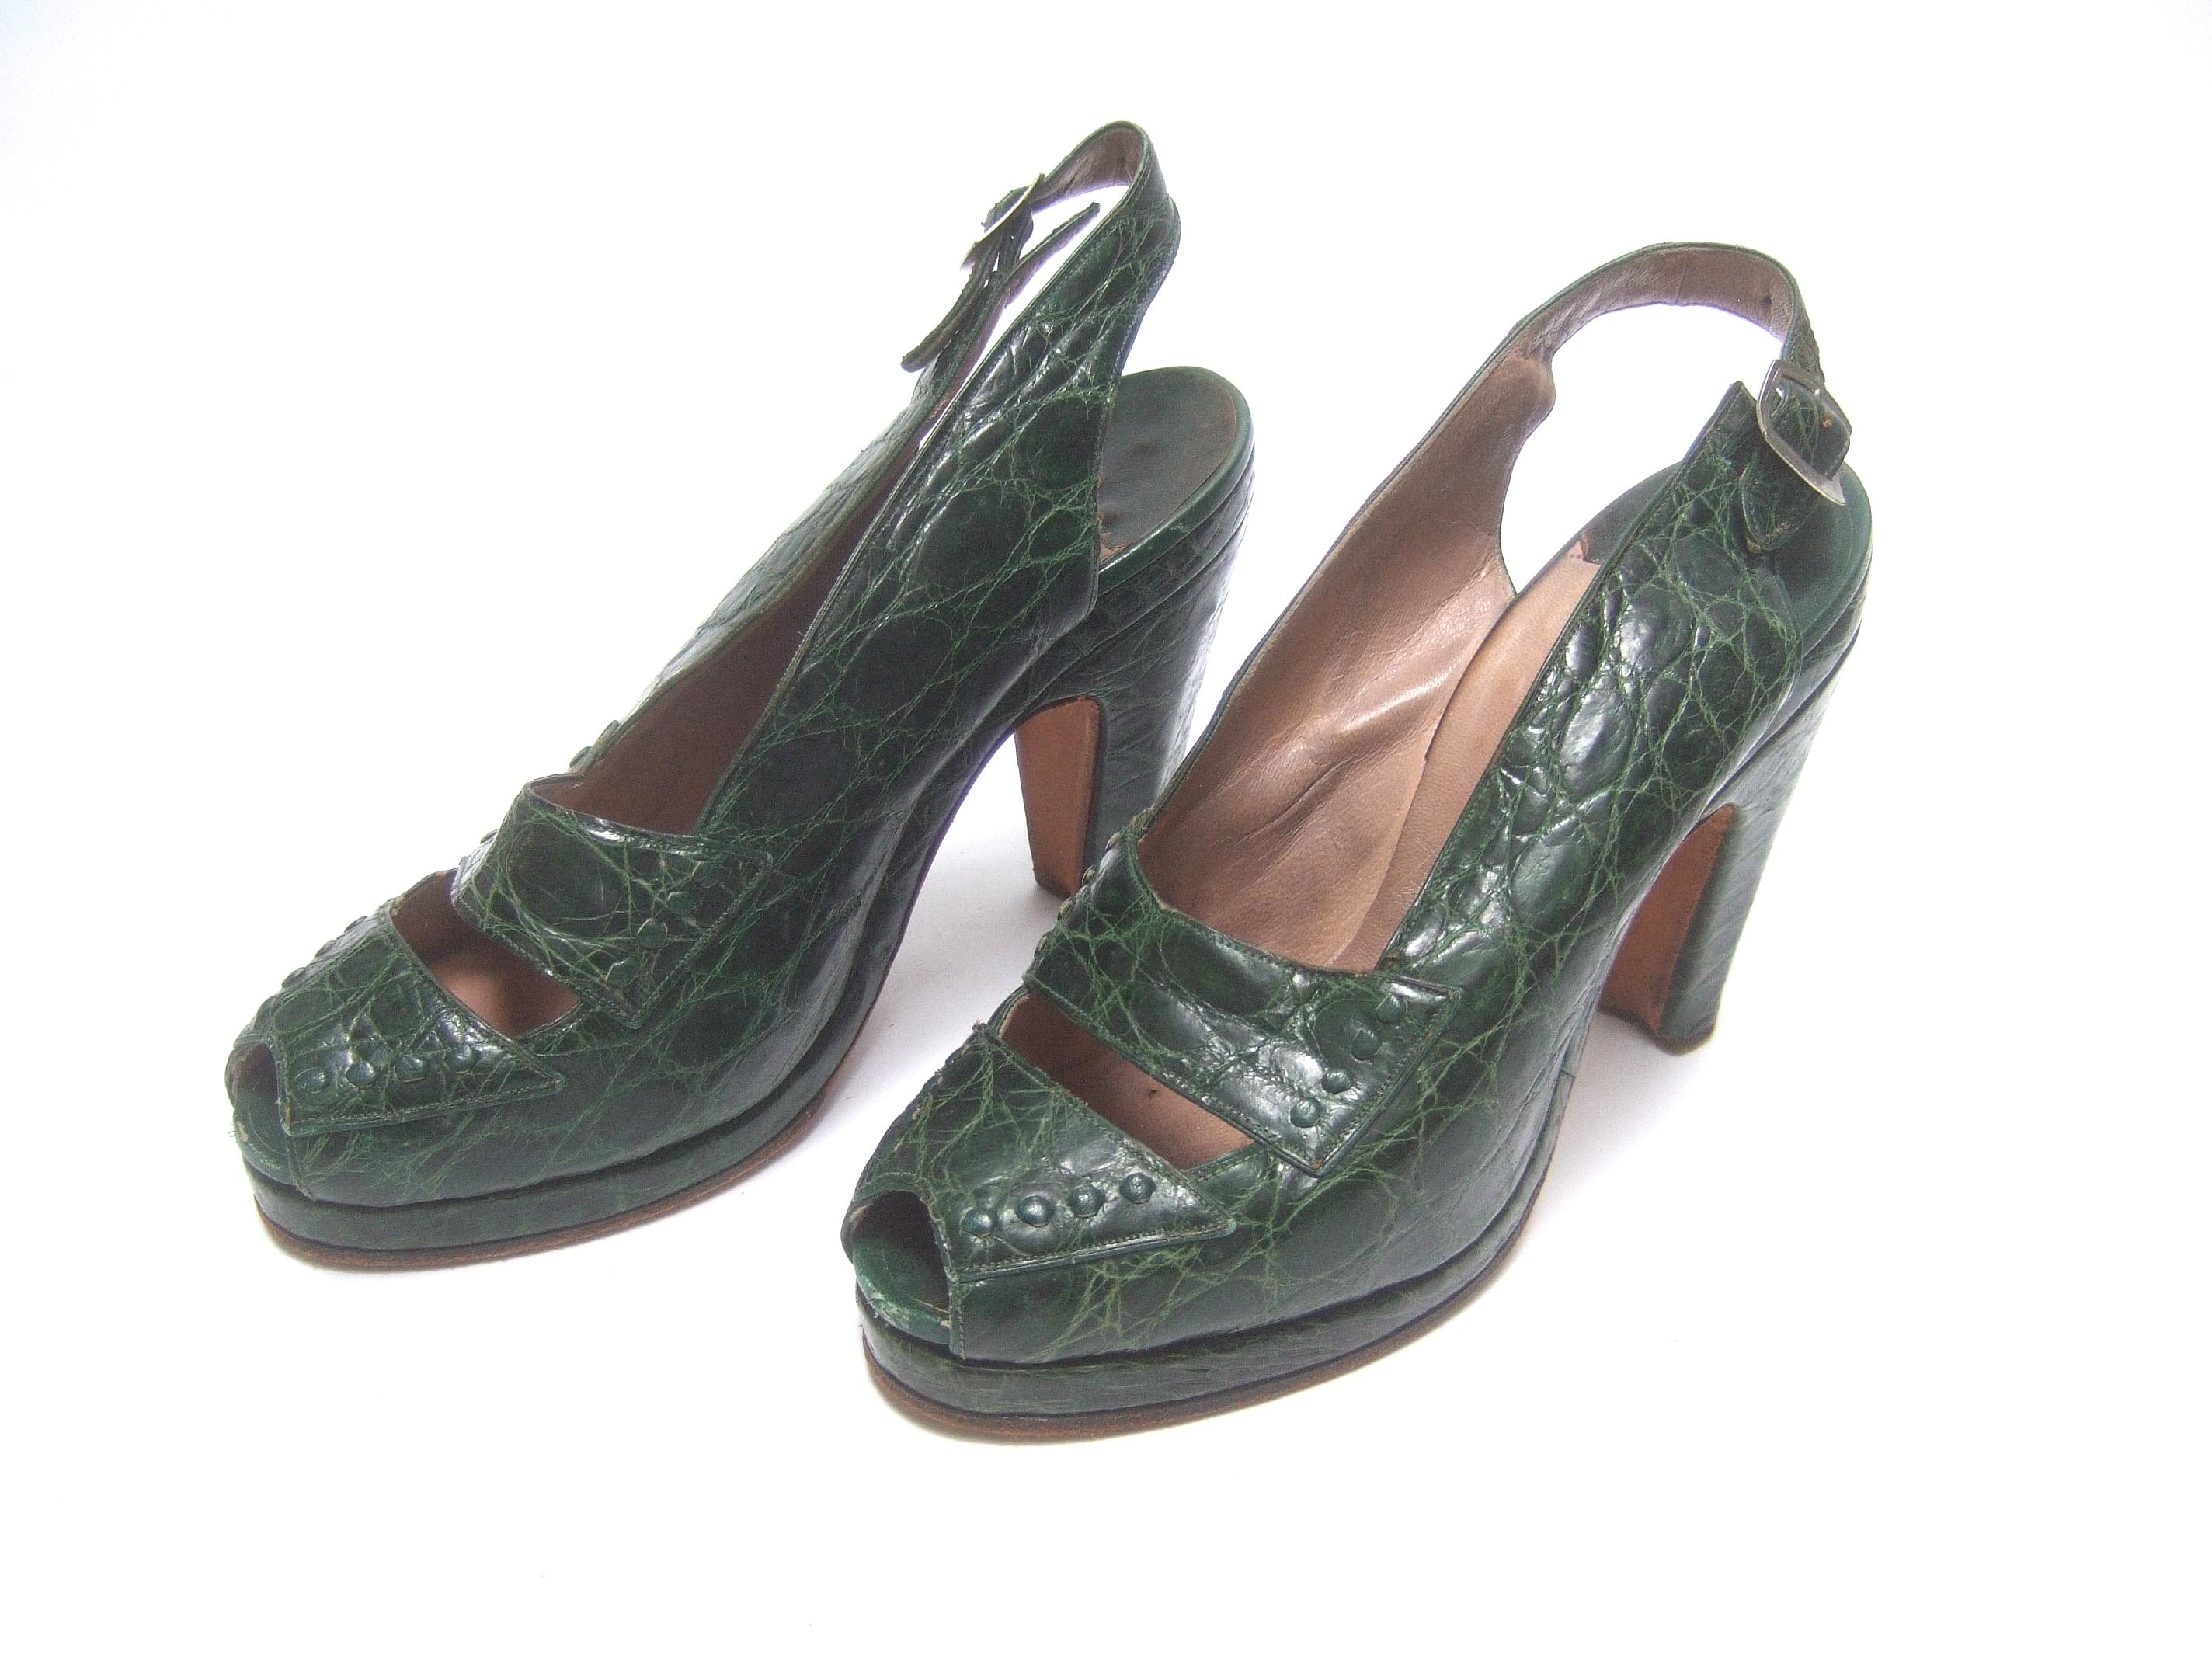 Saks Fifth Avenue 1940s Green Alligator Handbag & Peep Toe Pumps Ensemble 3